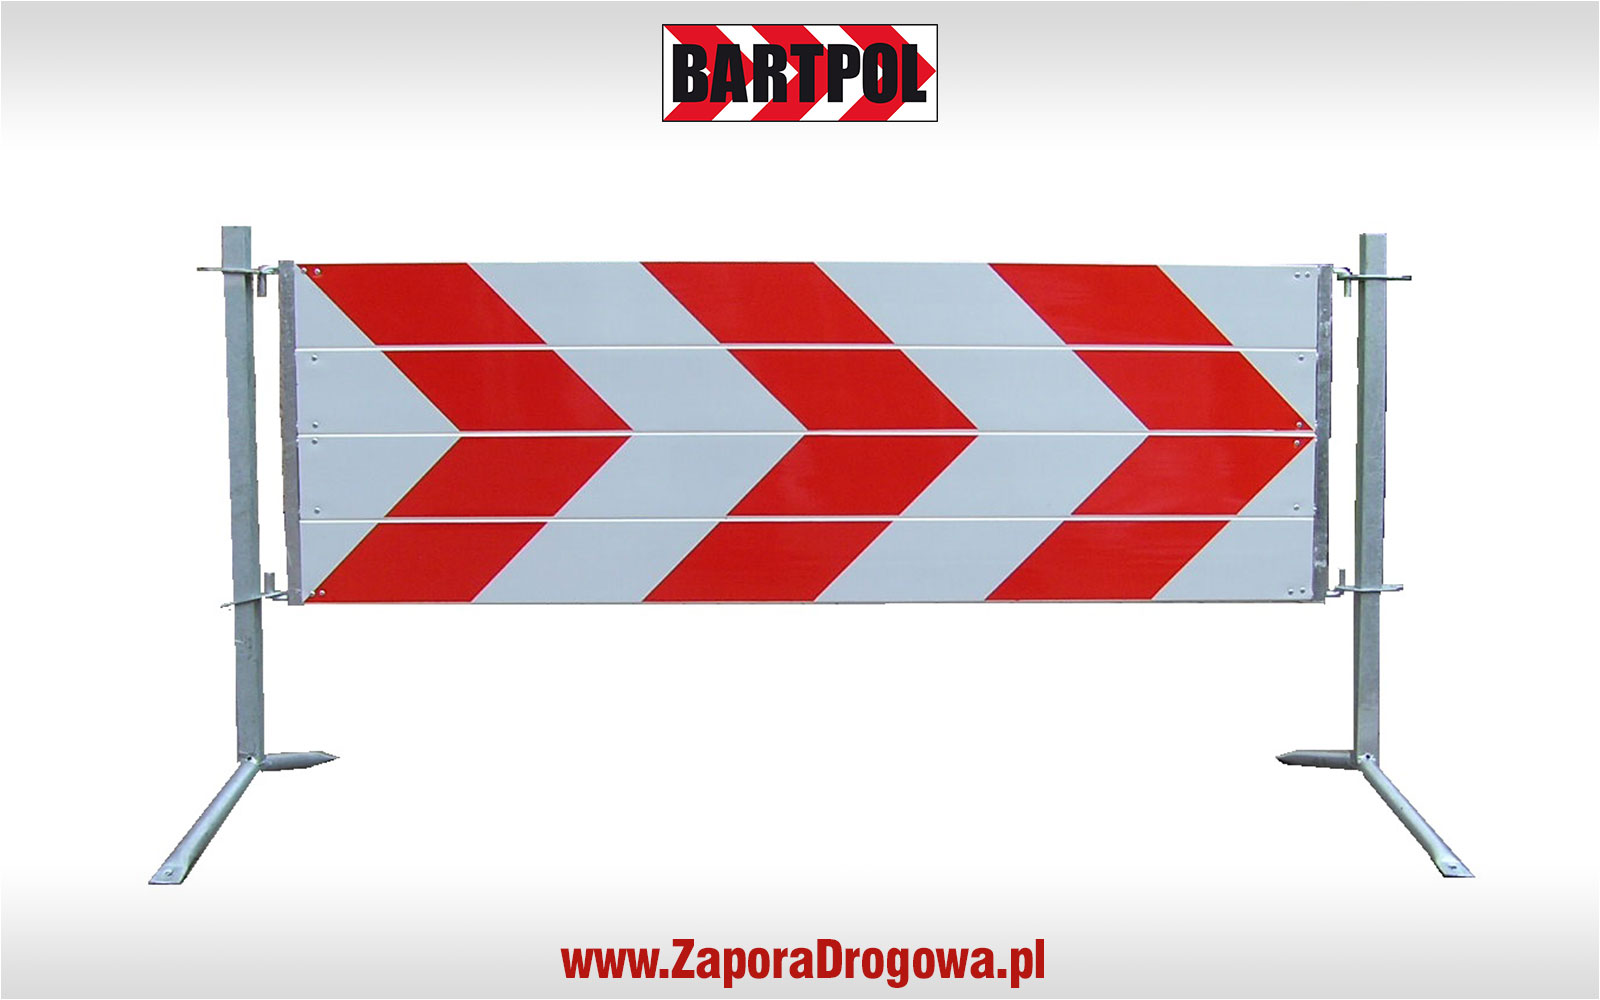 BARTPOL - www.ZaporaDrogowa.pl